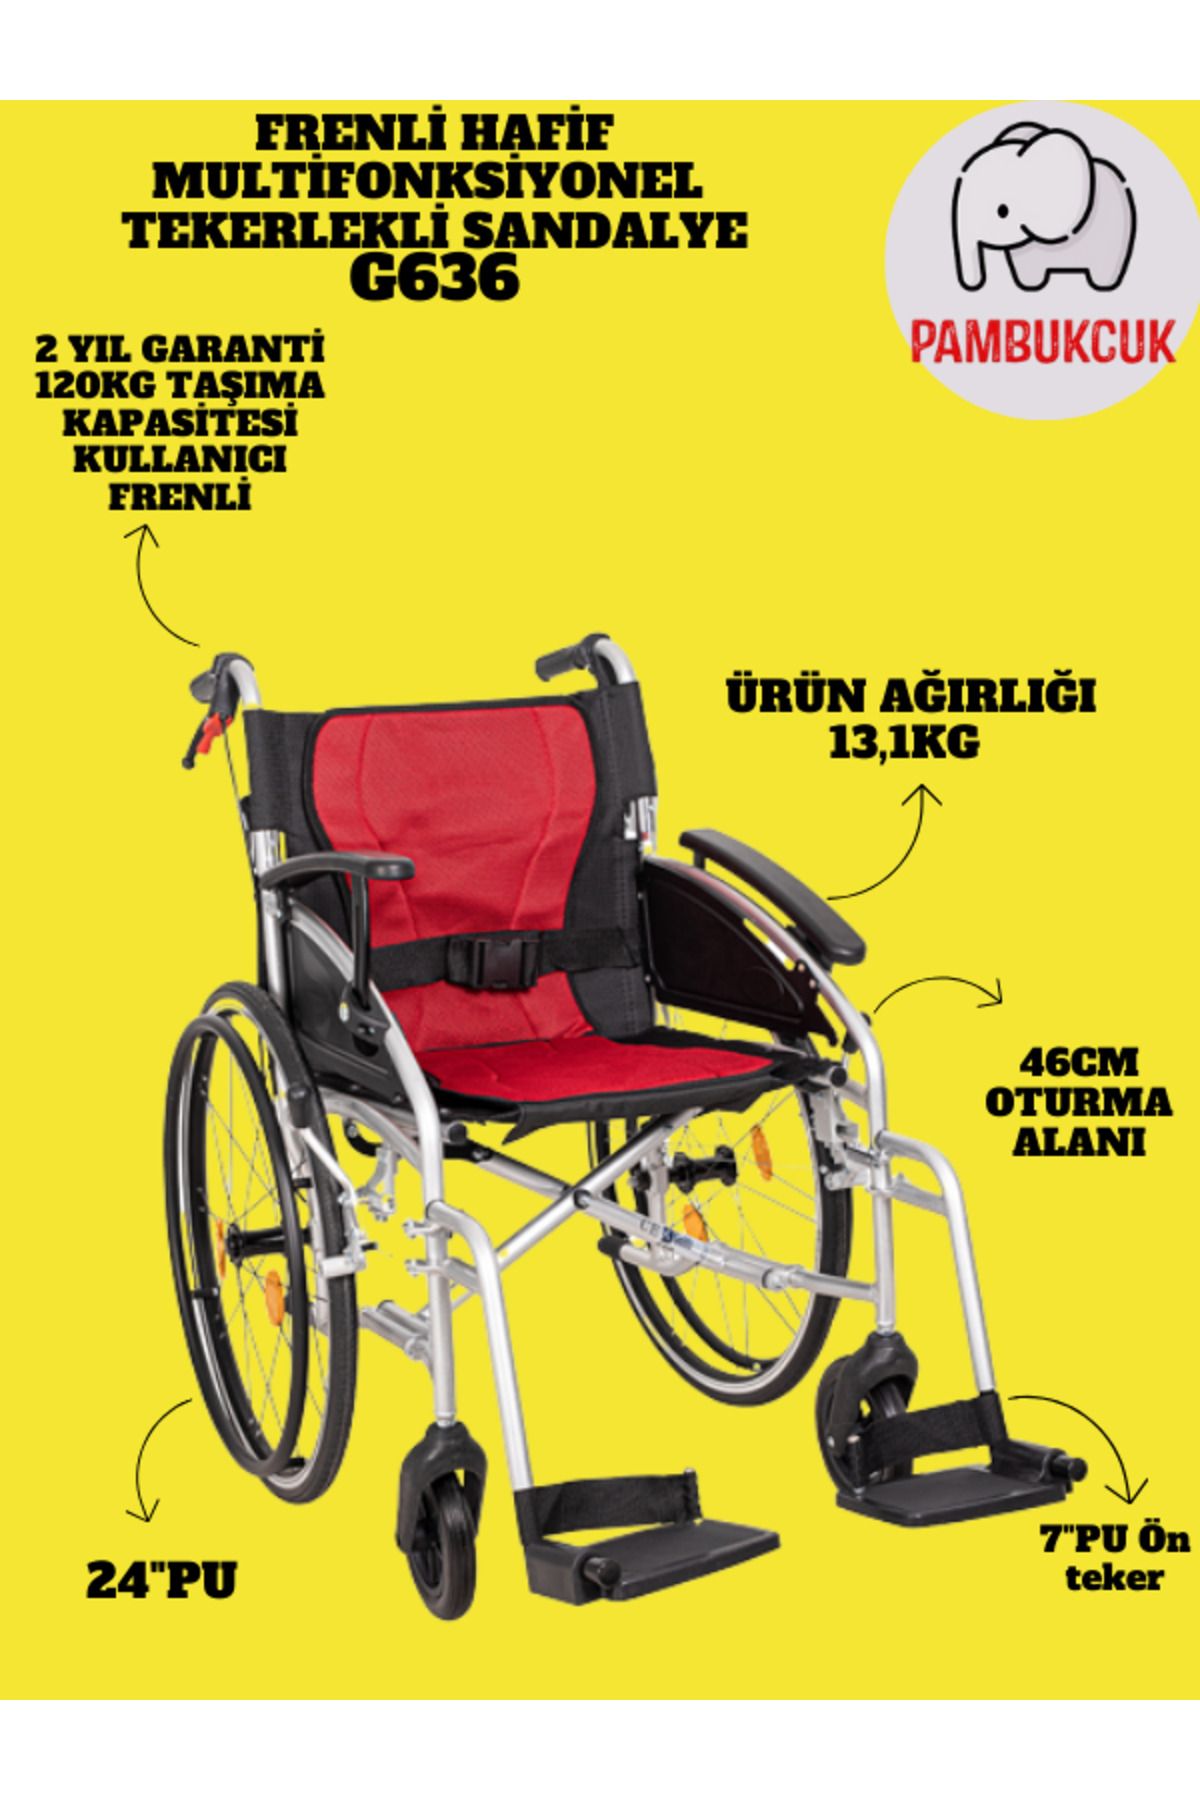 pambukcuk Refakatçi Frenli Katlanabilir Hafif Aliminyum Tekerlekli Sandalye G636